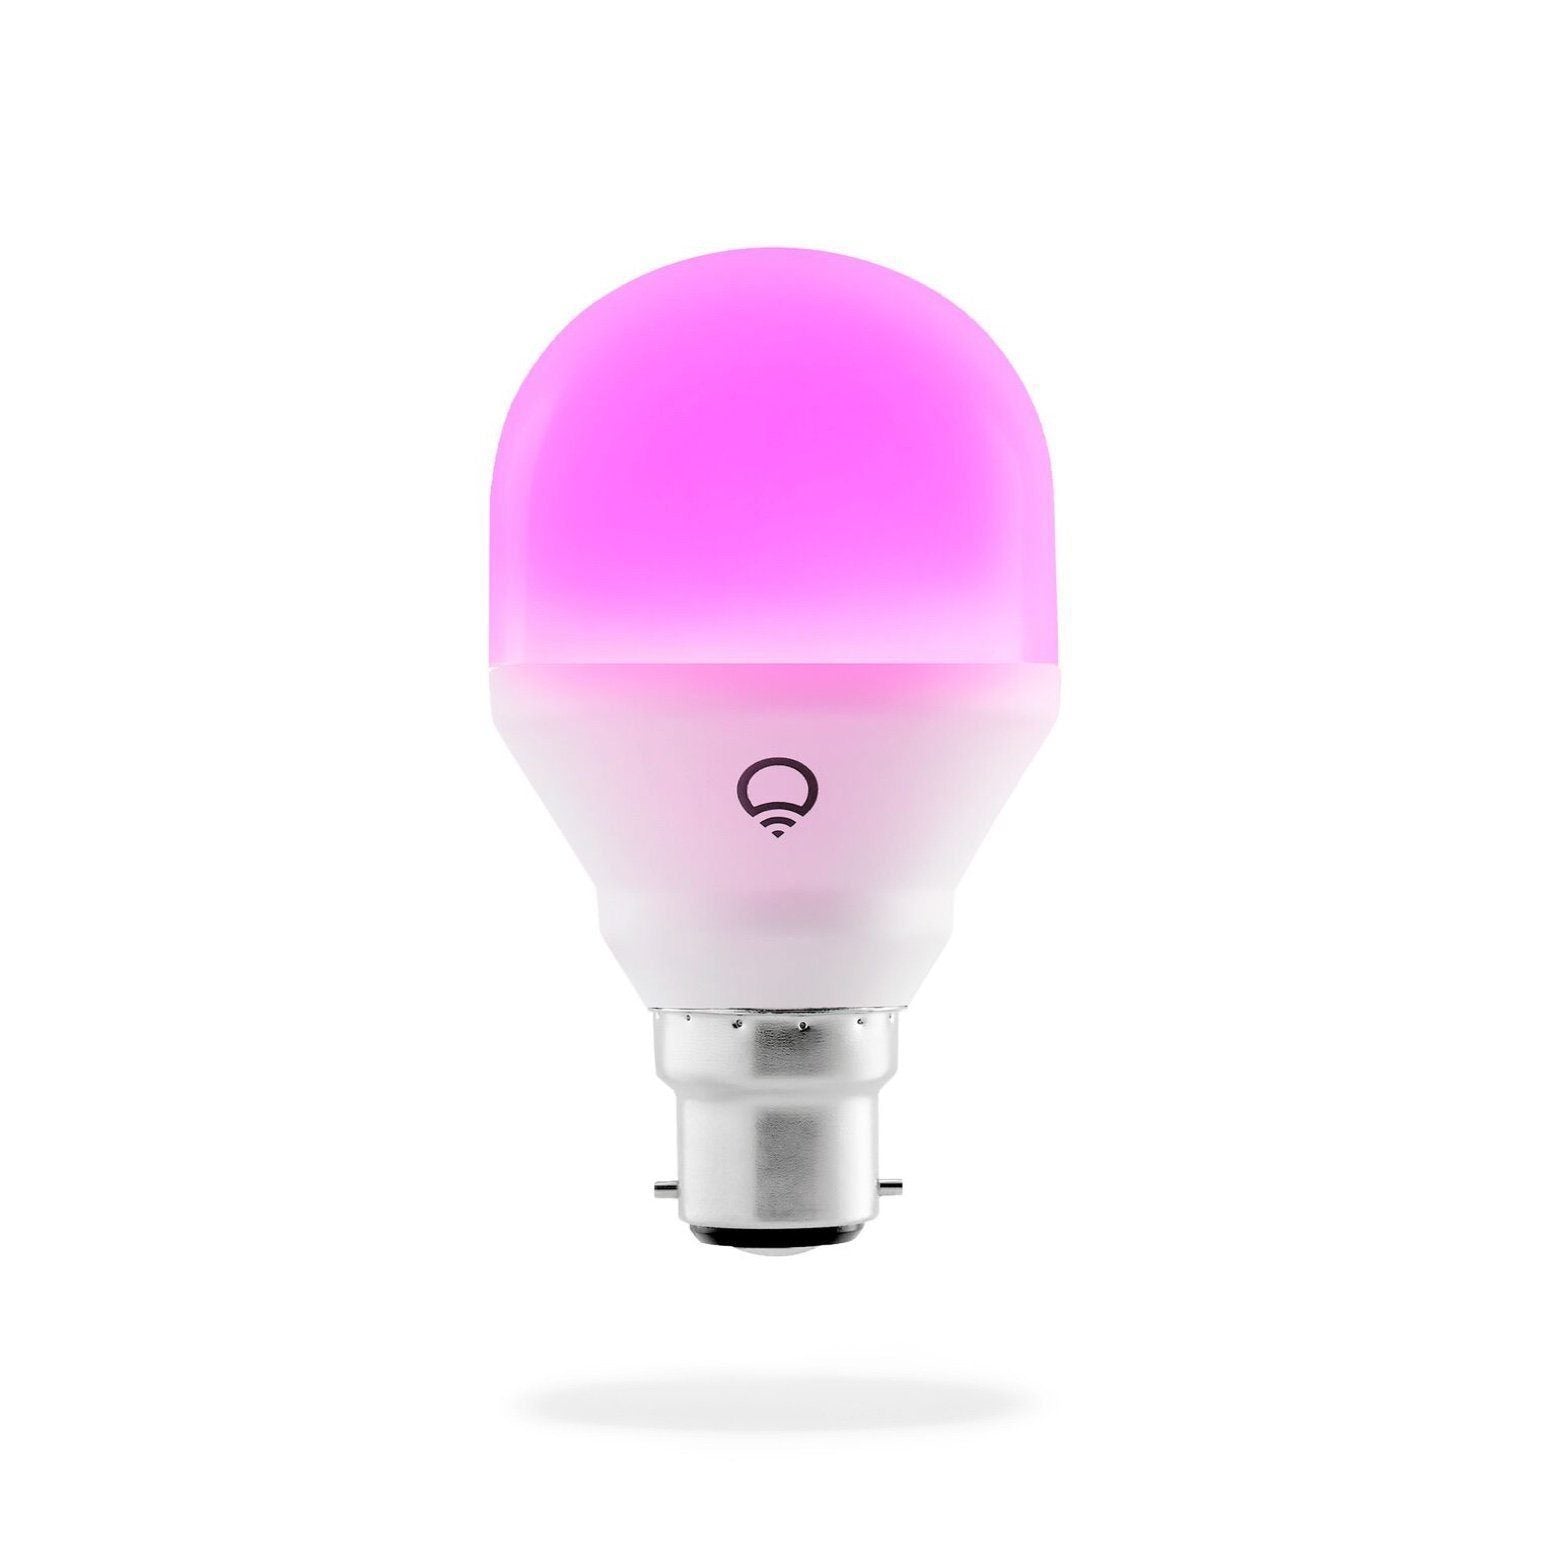 LIFX Mini lightbulb emitting a violet light